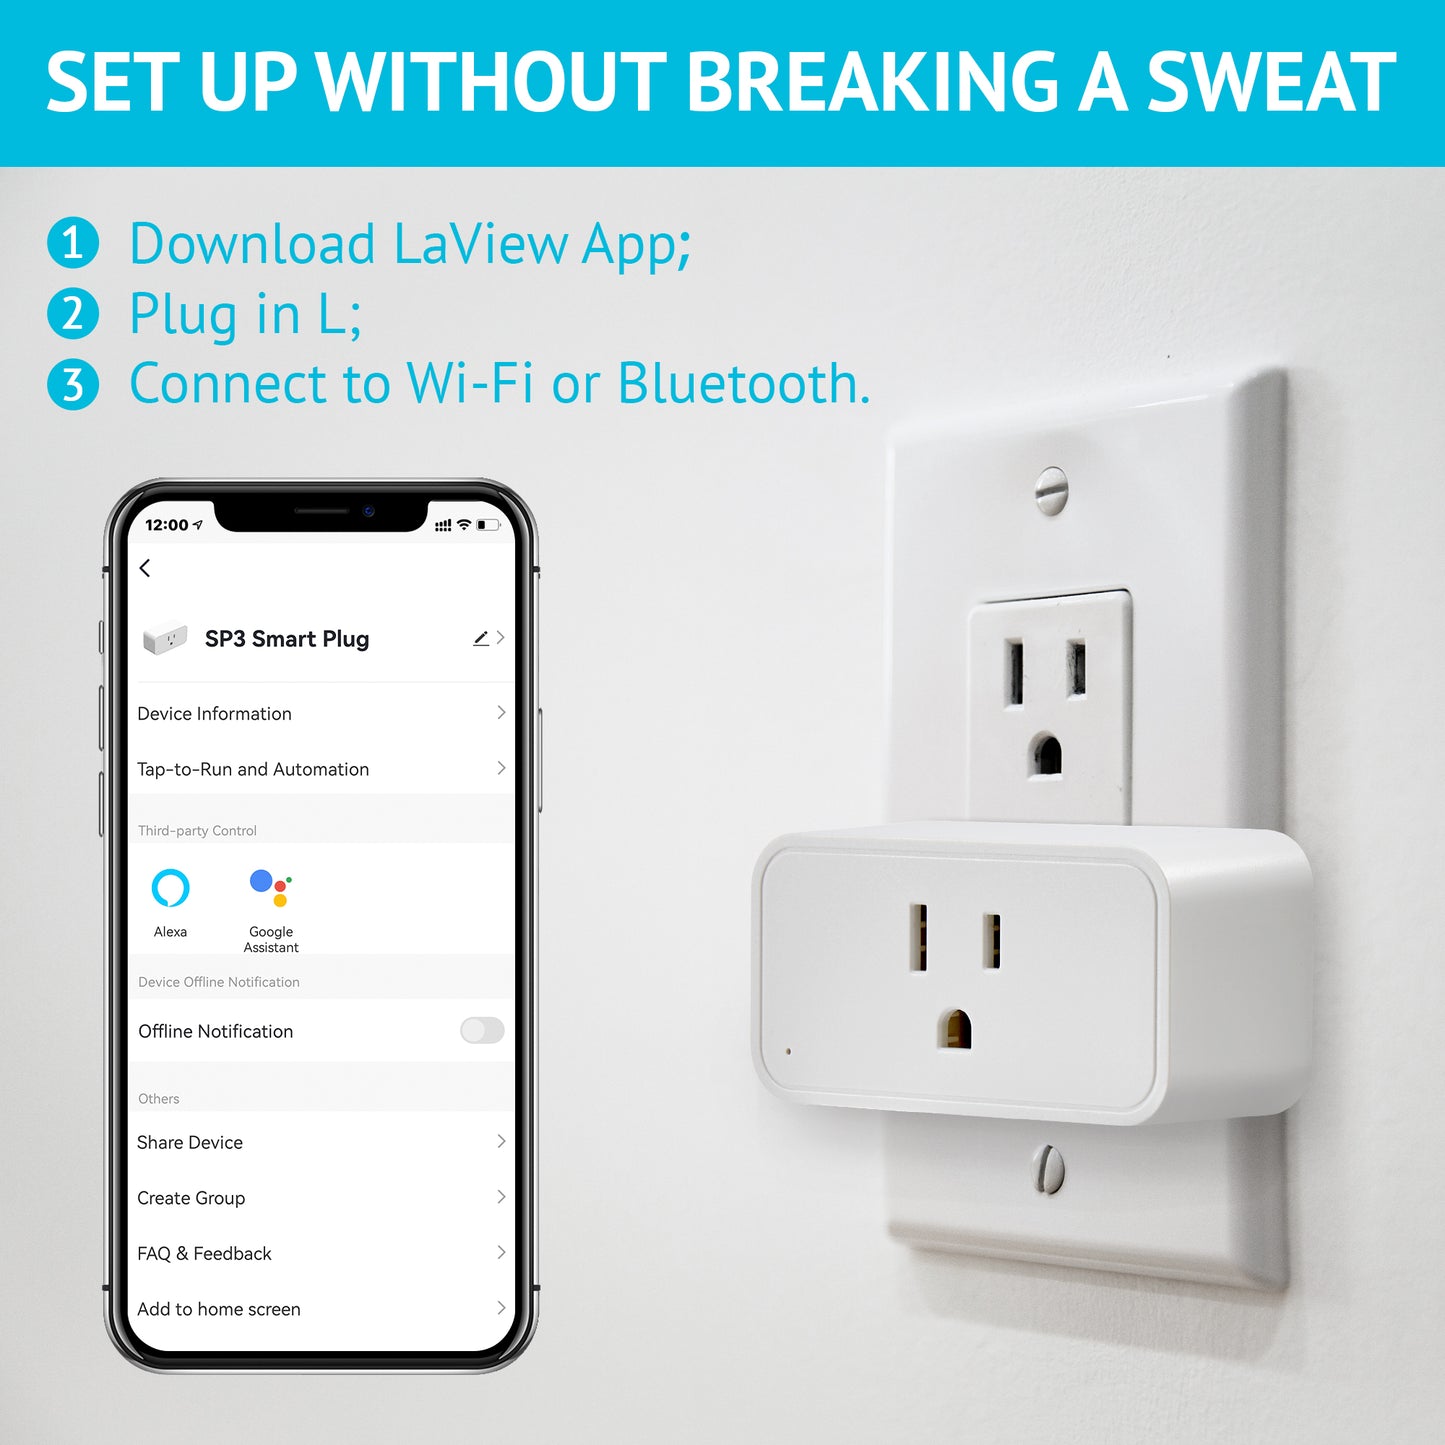 SP3 WiFi Smart Plug - works with LaView App